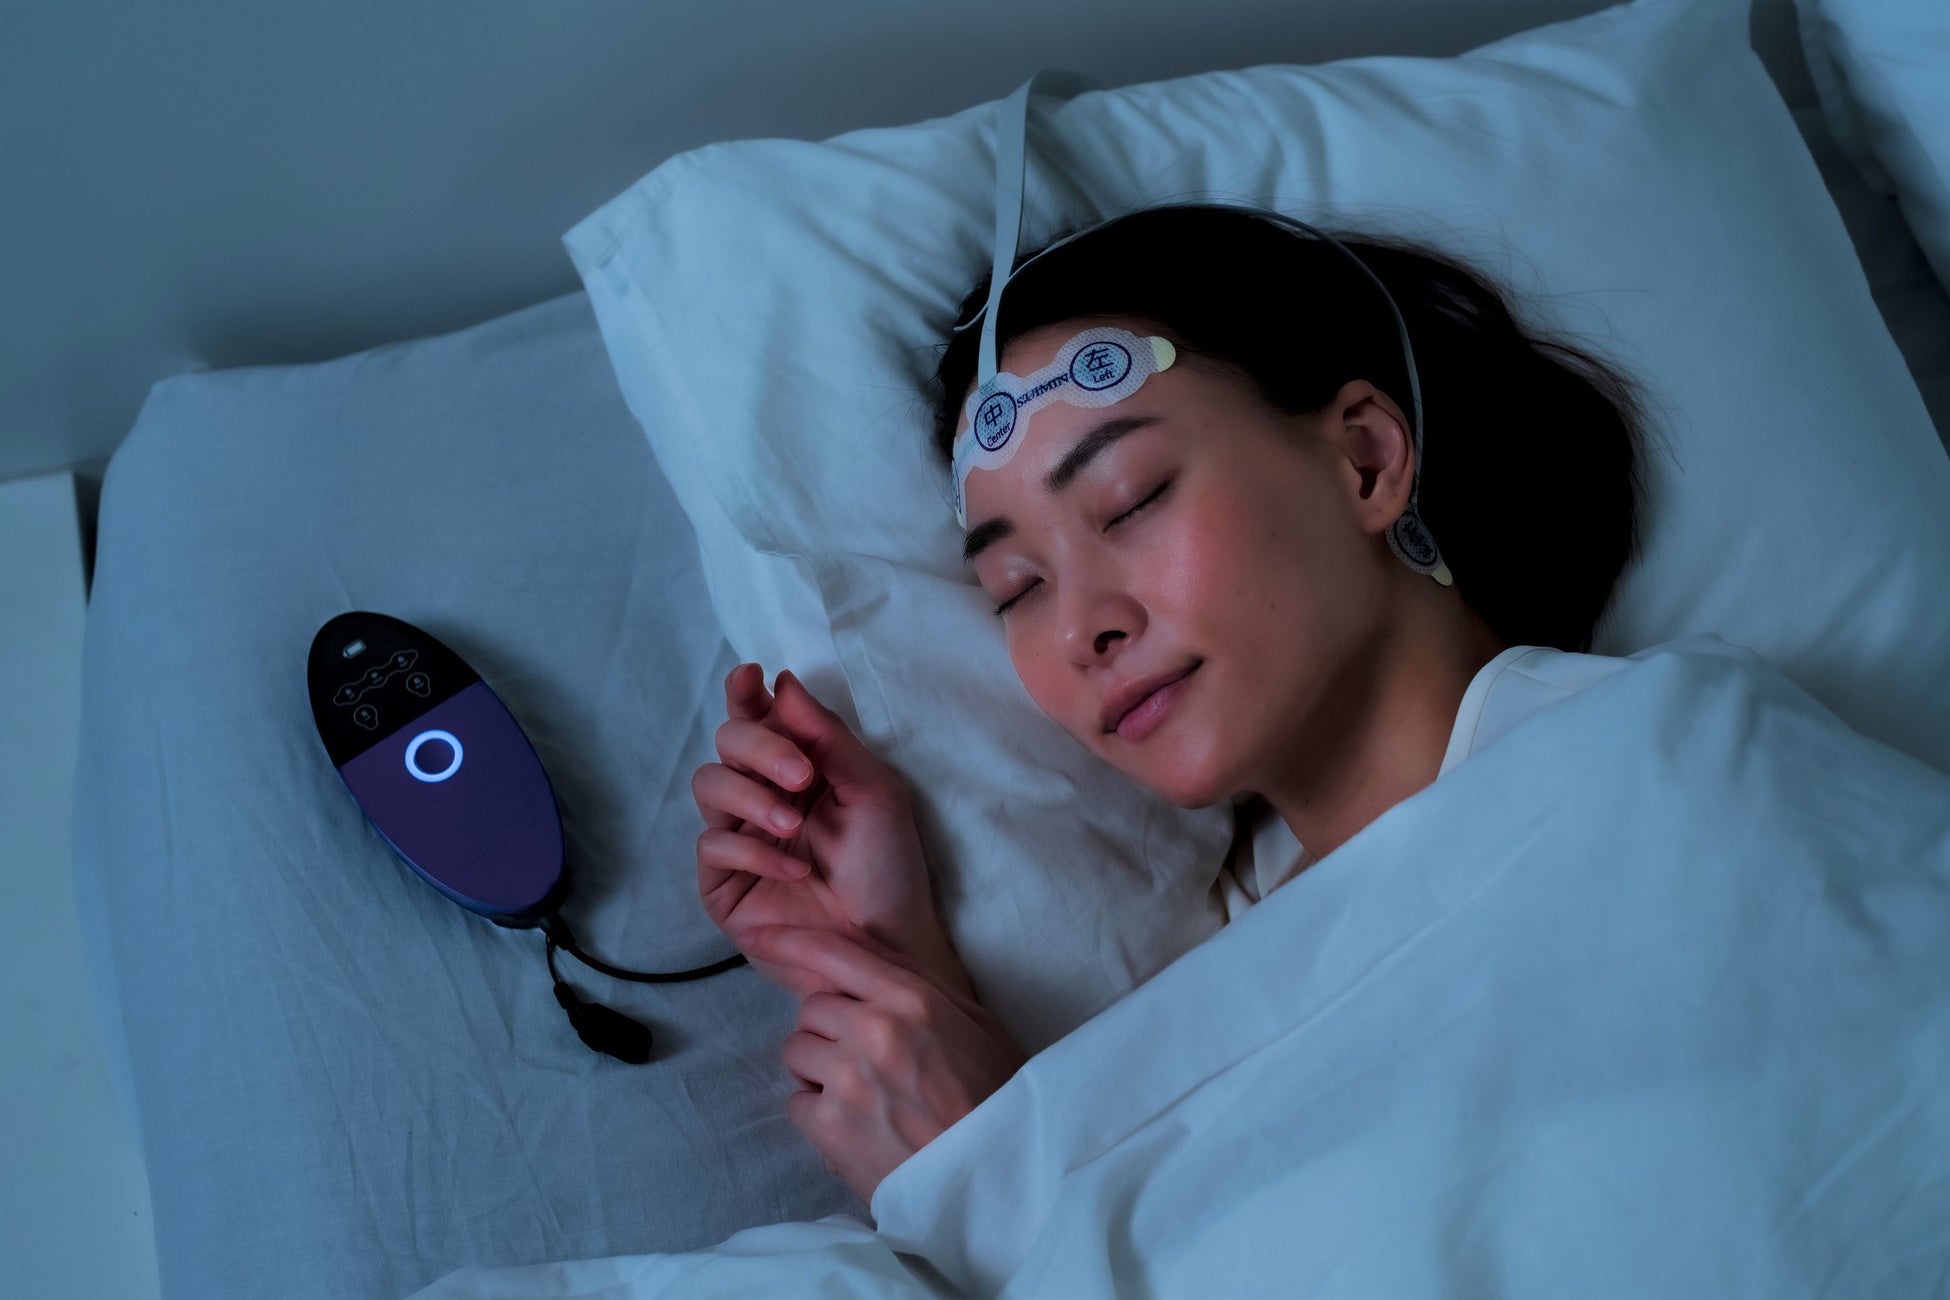 宿泊施設で睡眠に関するサービス提供に向けた実証実験を実施